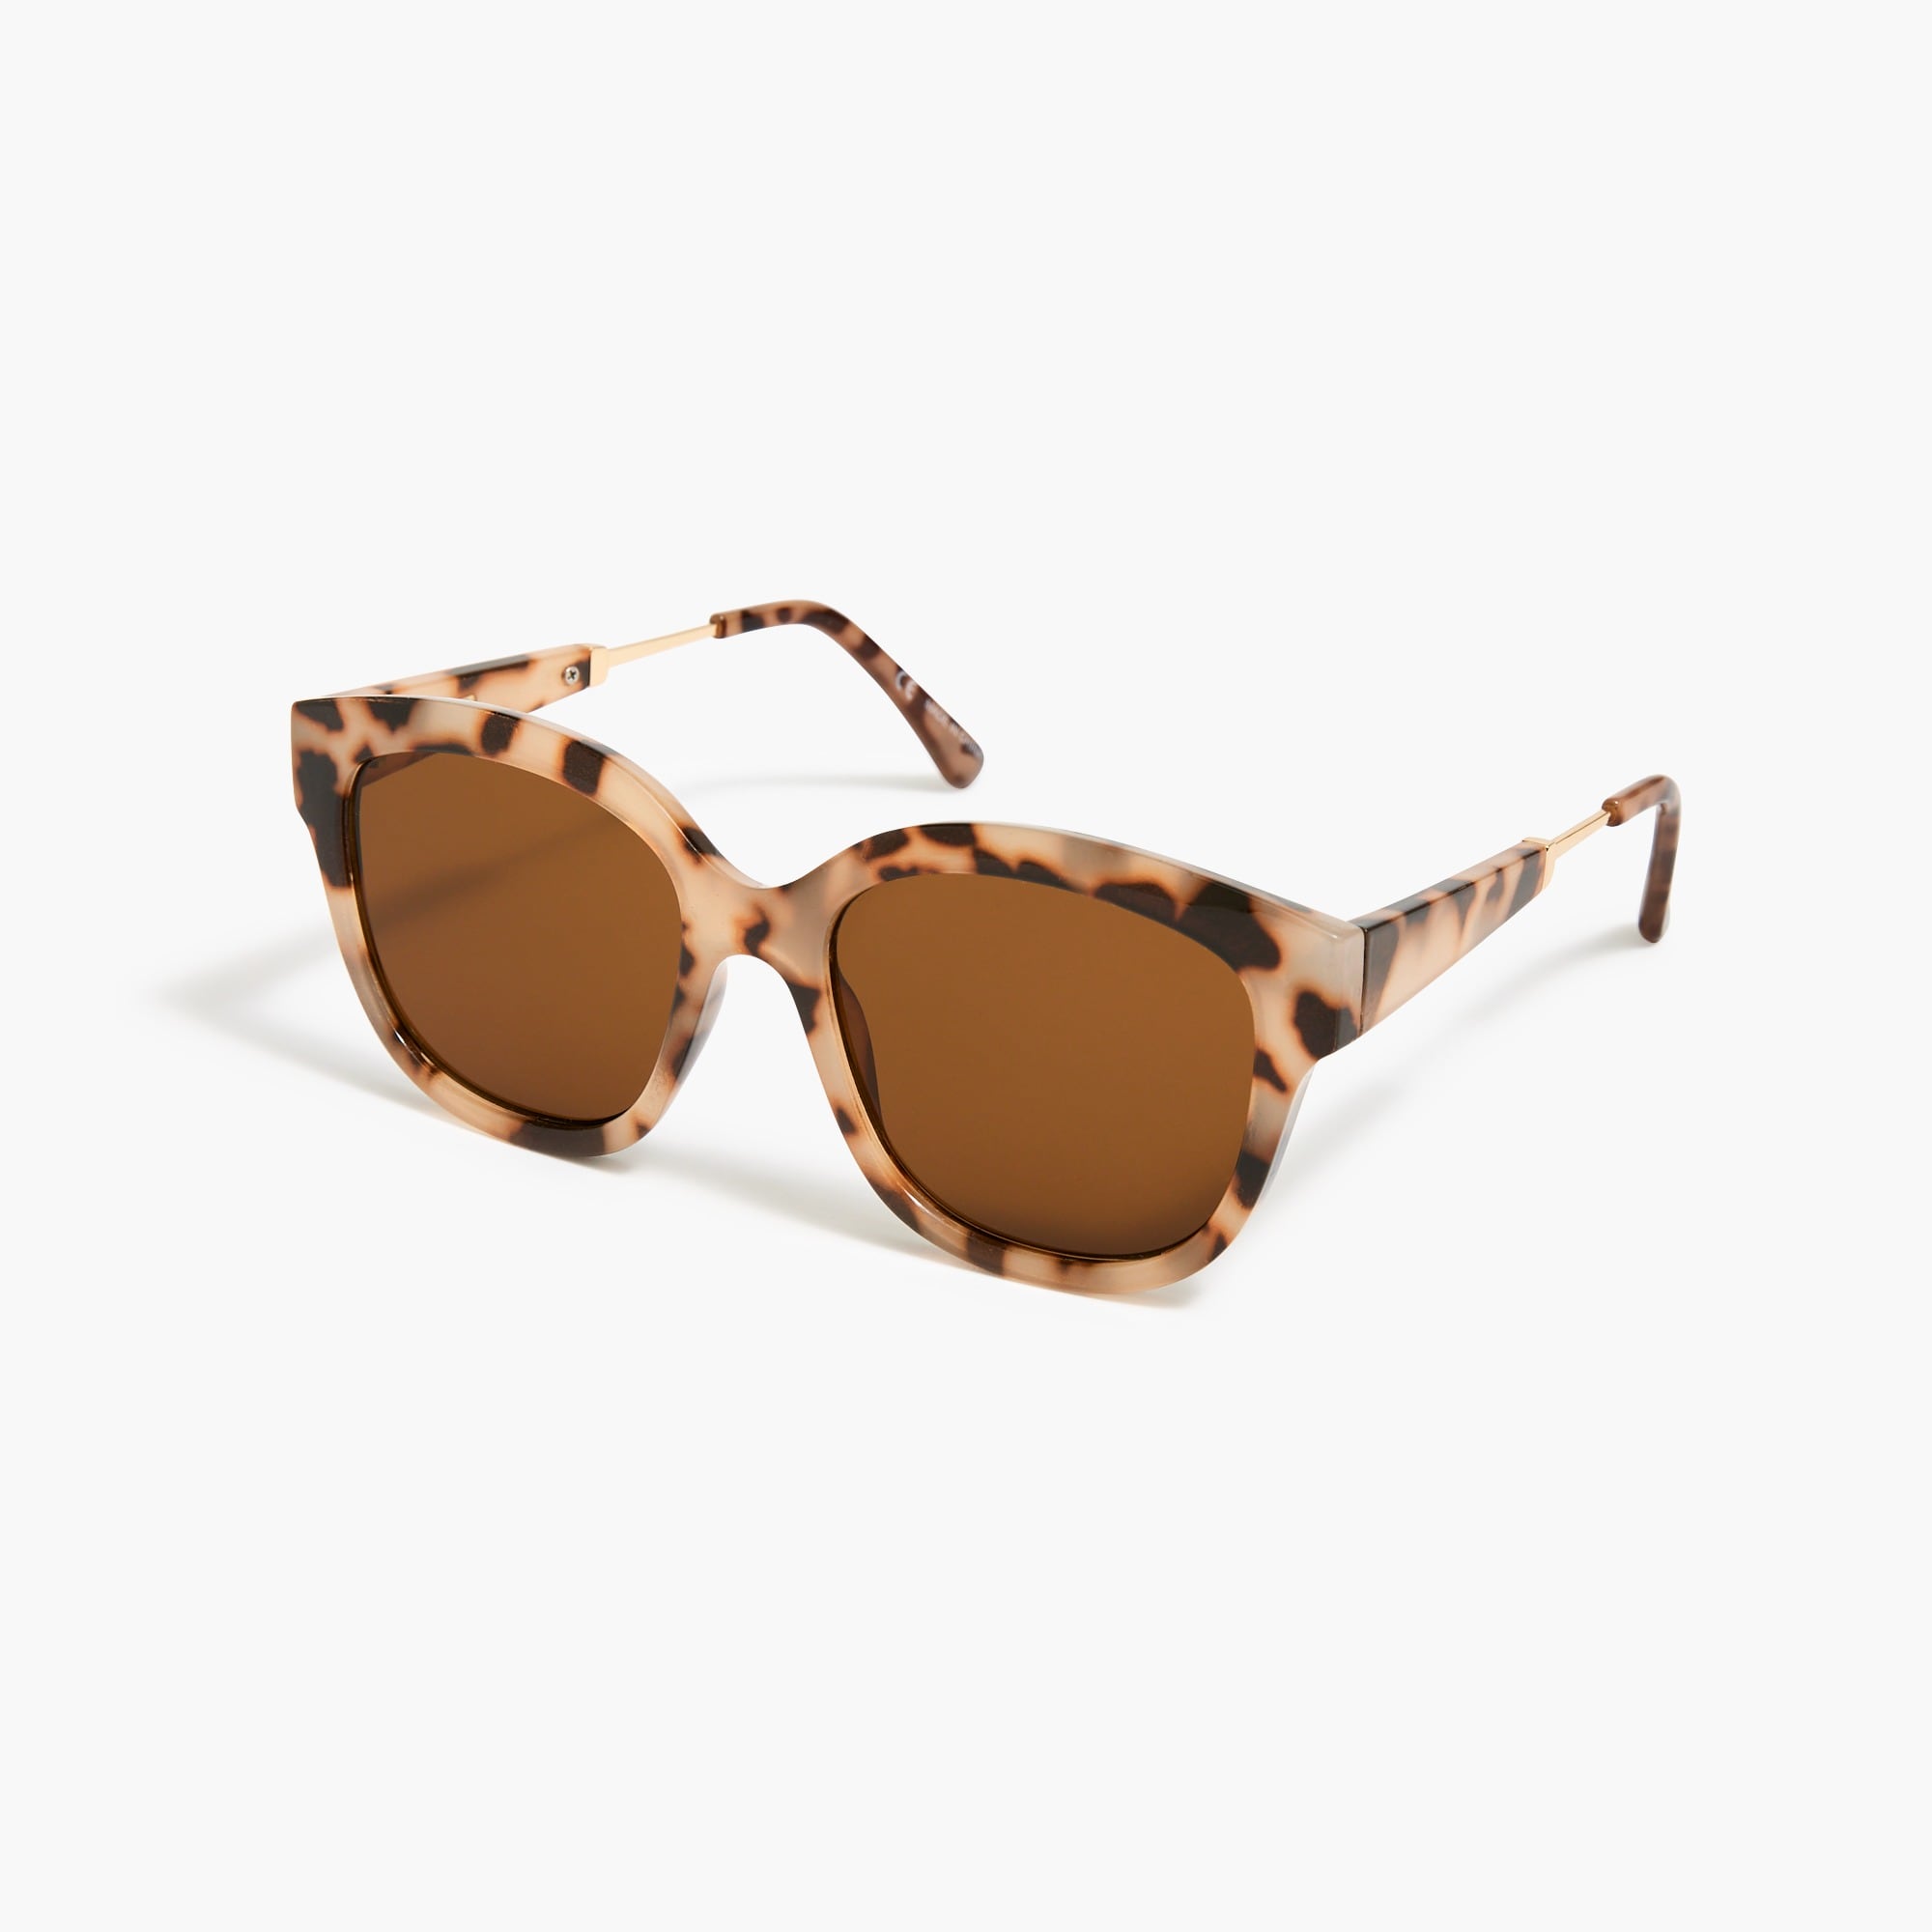 womens Tortoise D-frame sunglasses